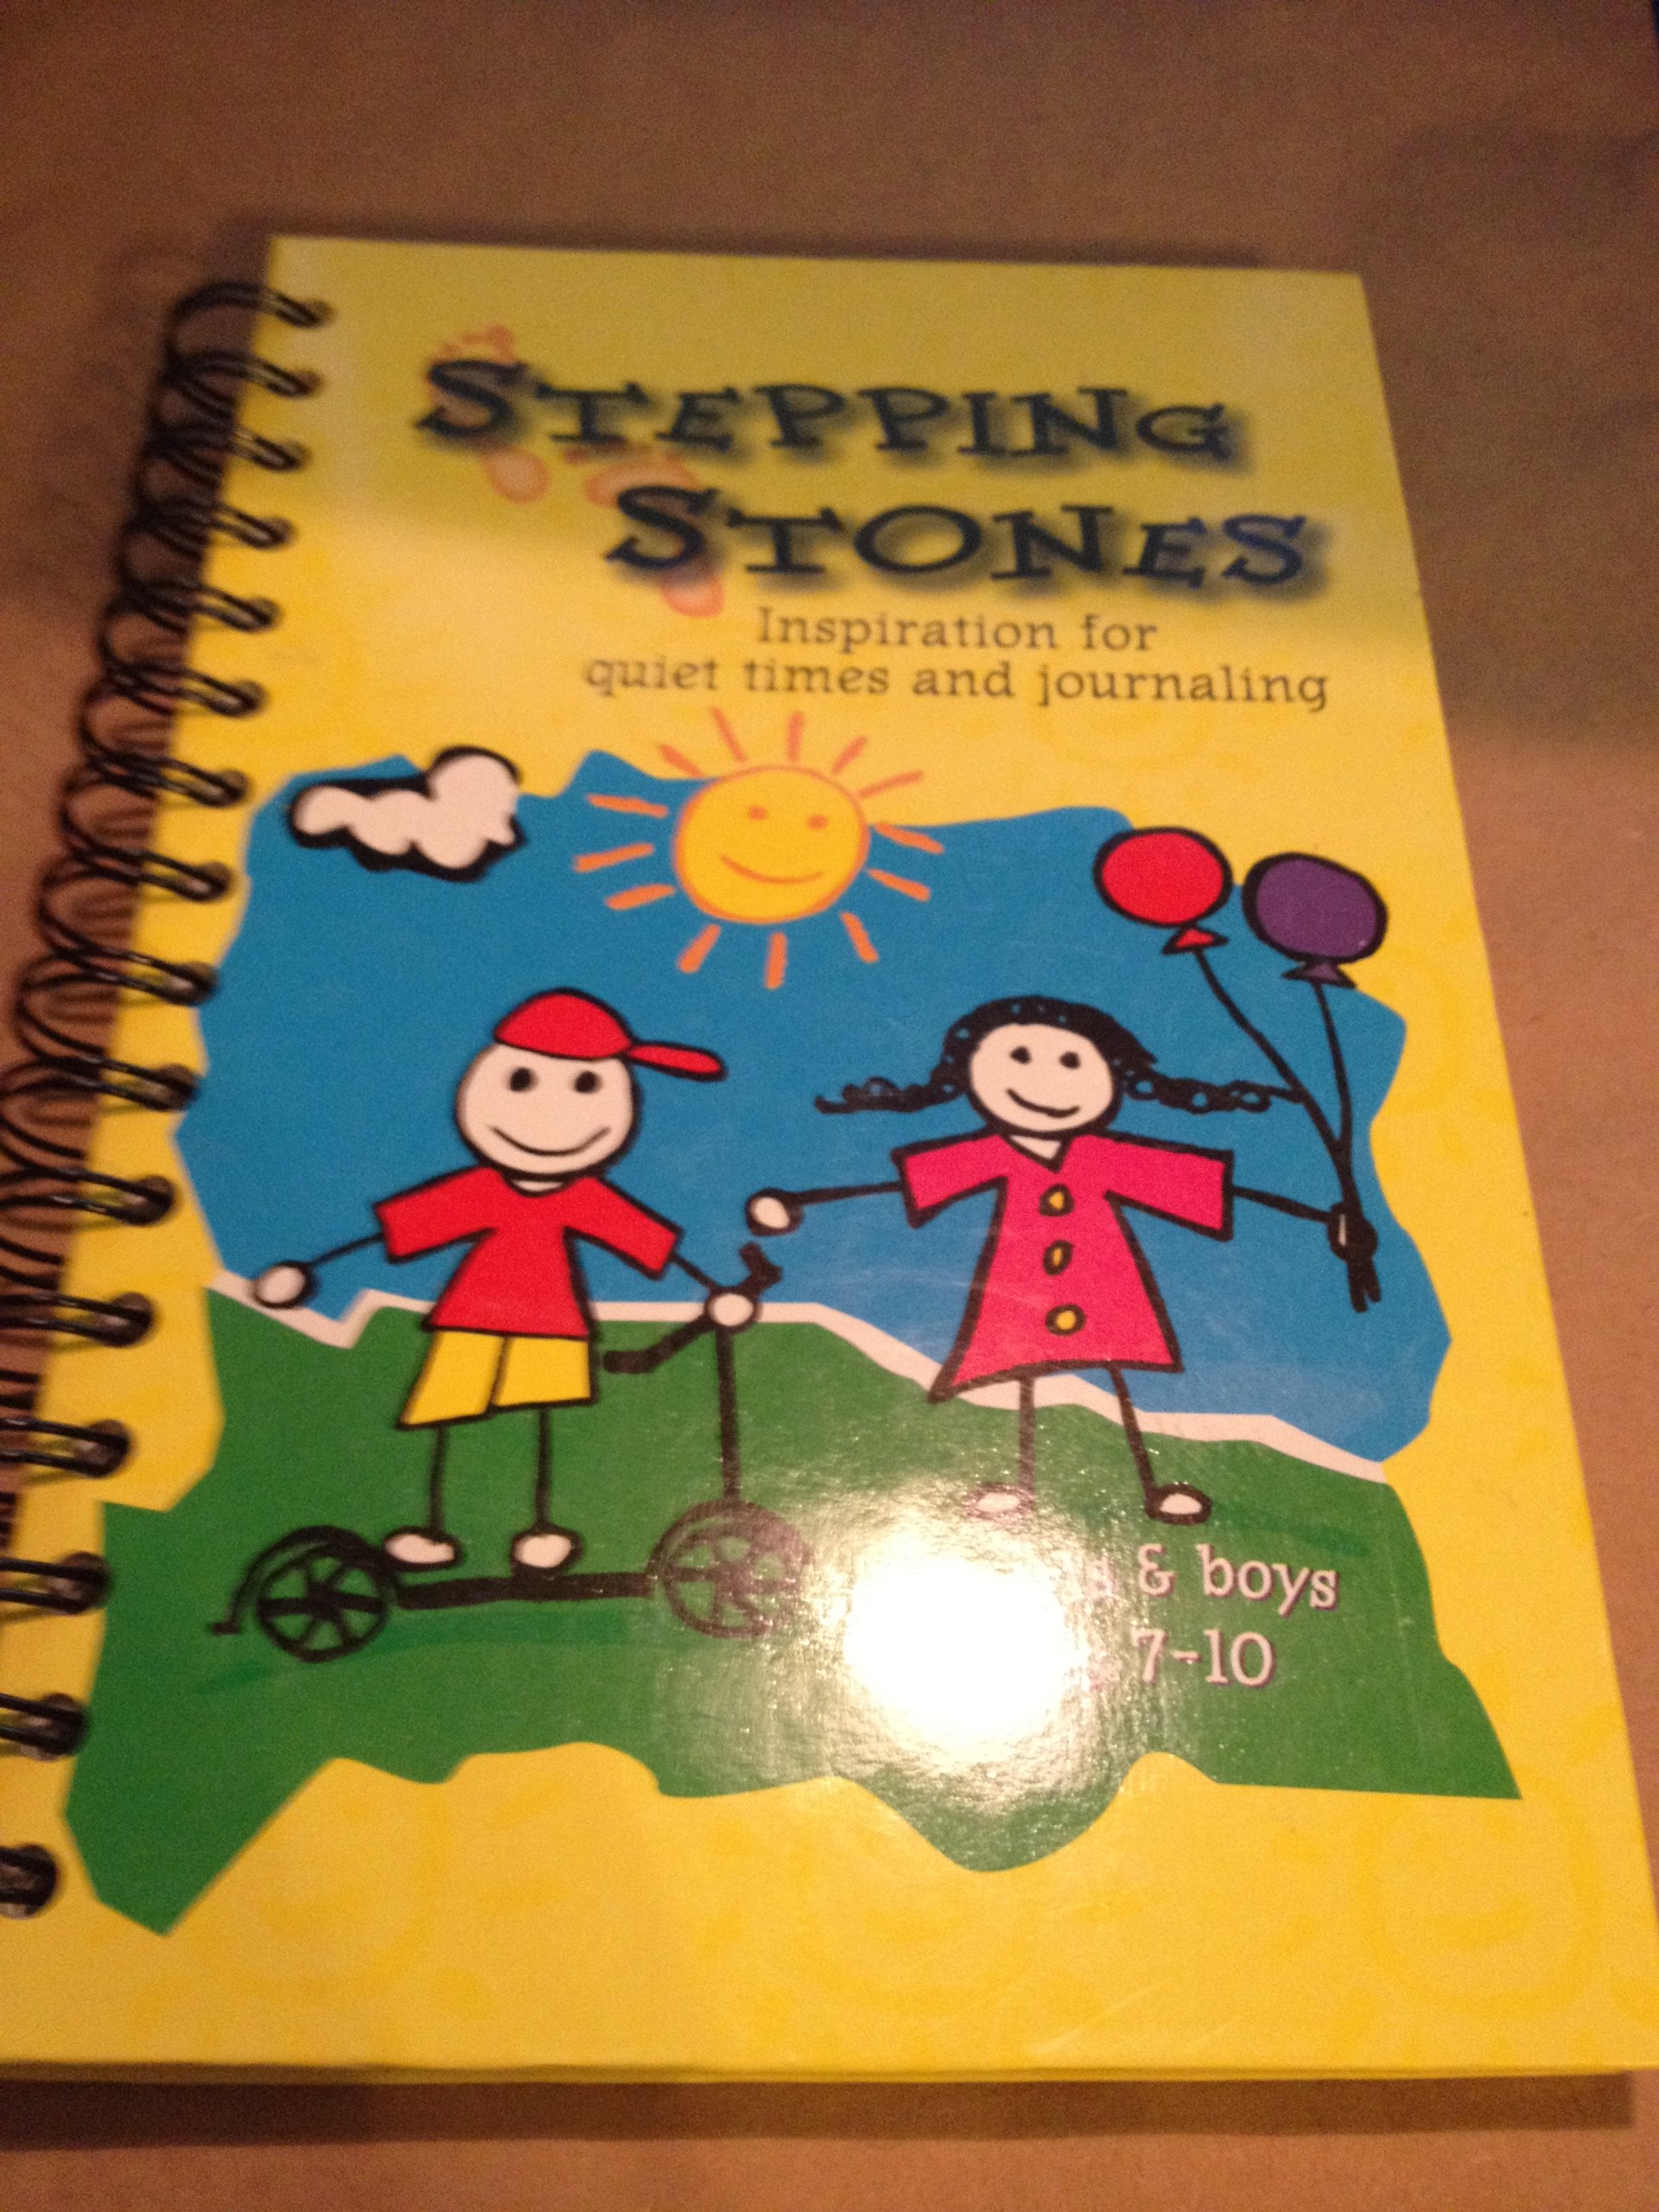 Stepping Stones: ispirazione per tempi tranquilli e diario, per ragazzi e ragazze... - Foto 1 di 1